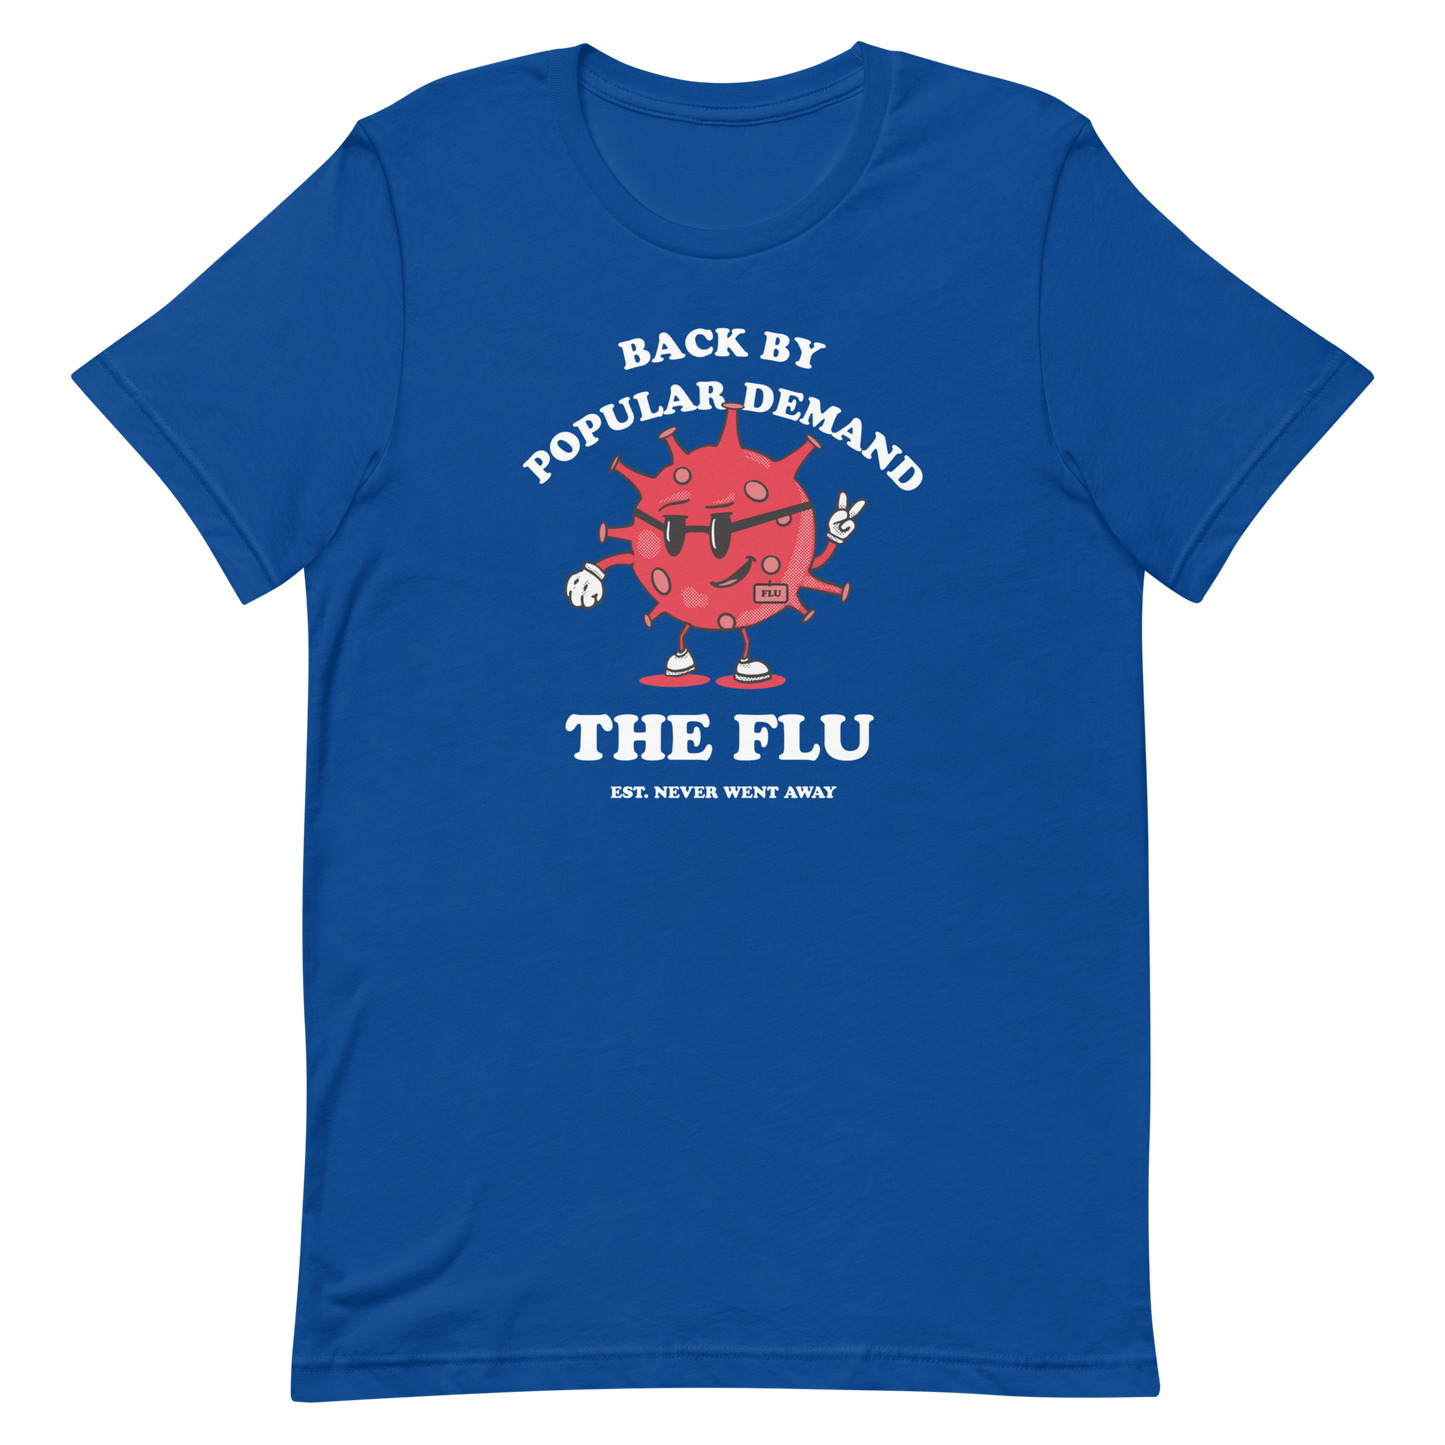 The Flu Returns T-shirt